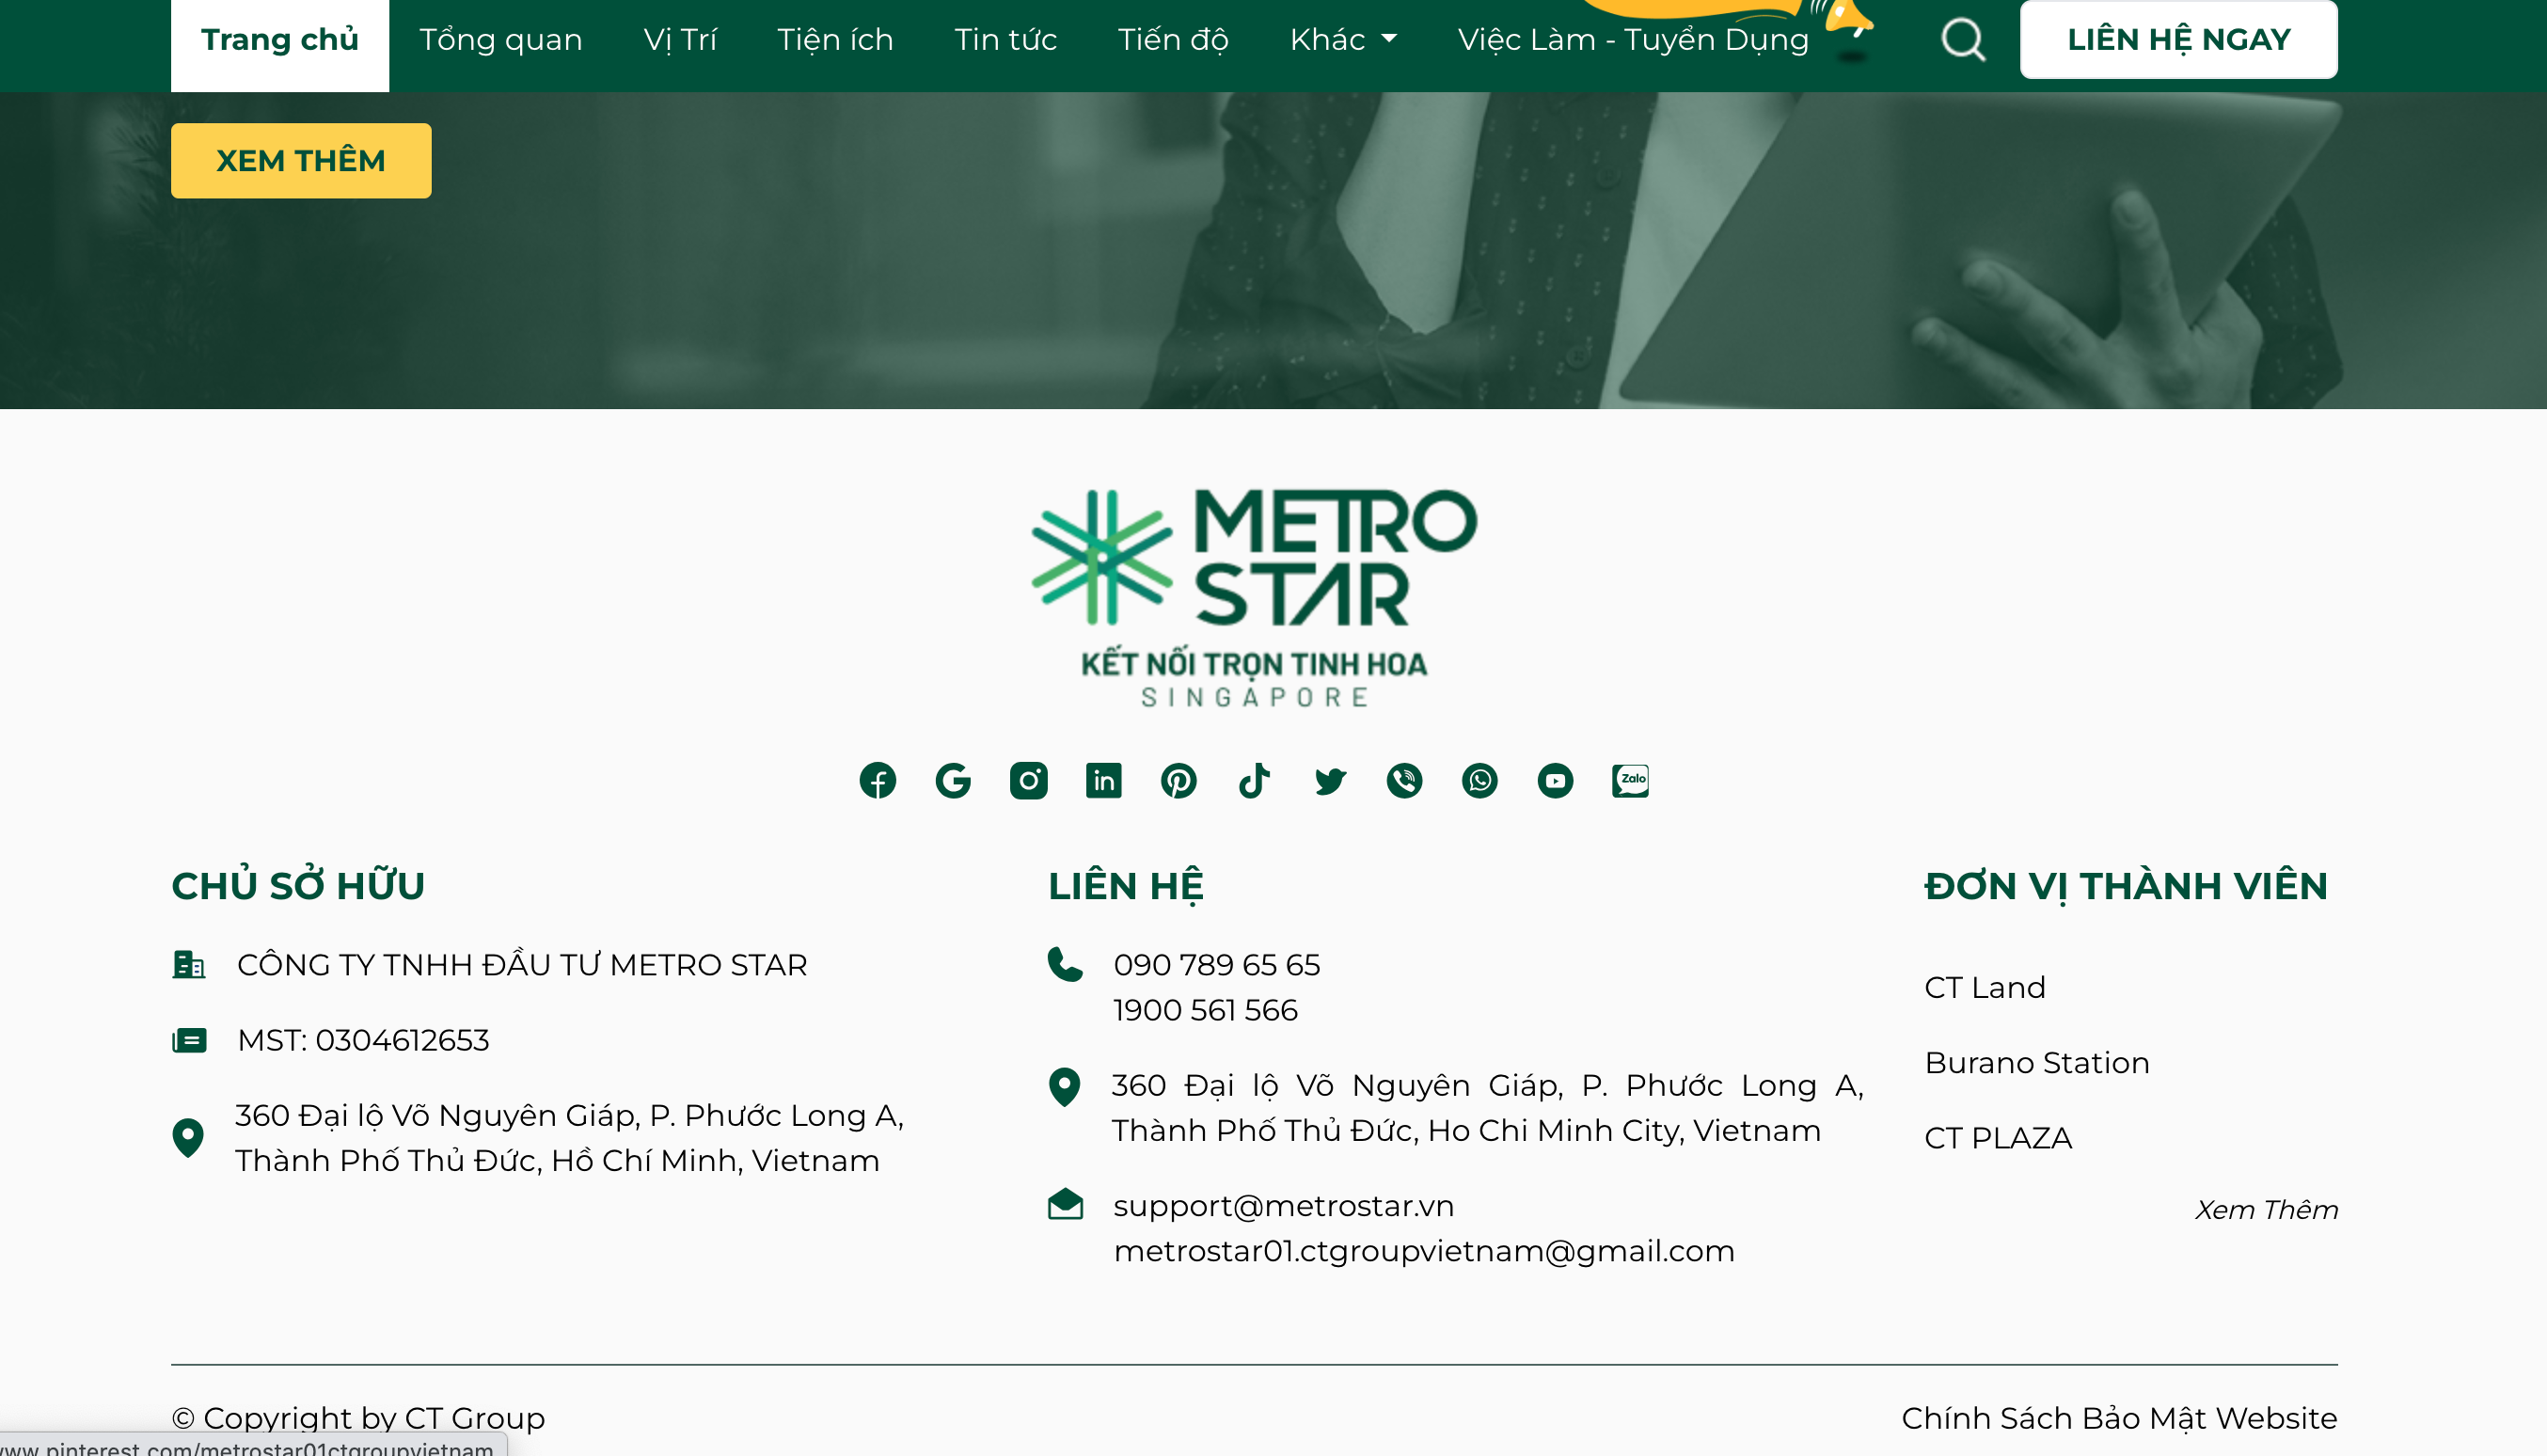 Một phần giới thiệu về Metro Star trên Website. Ảnh: Chụp màn hình.